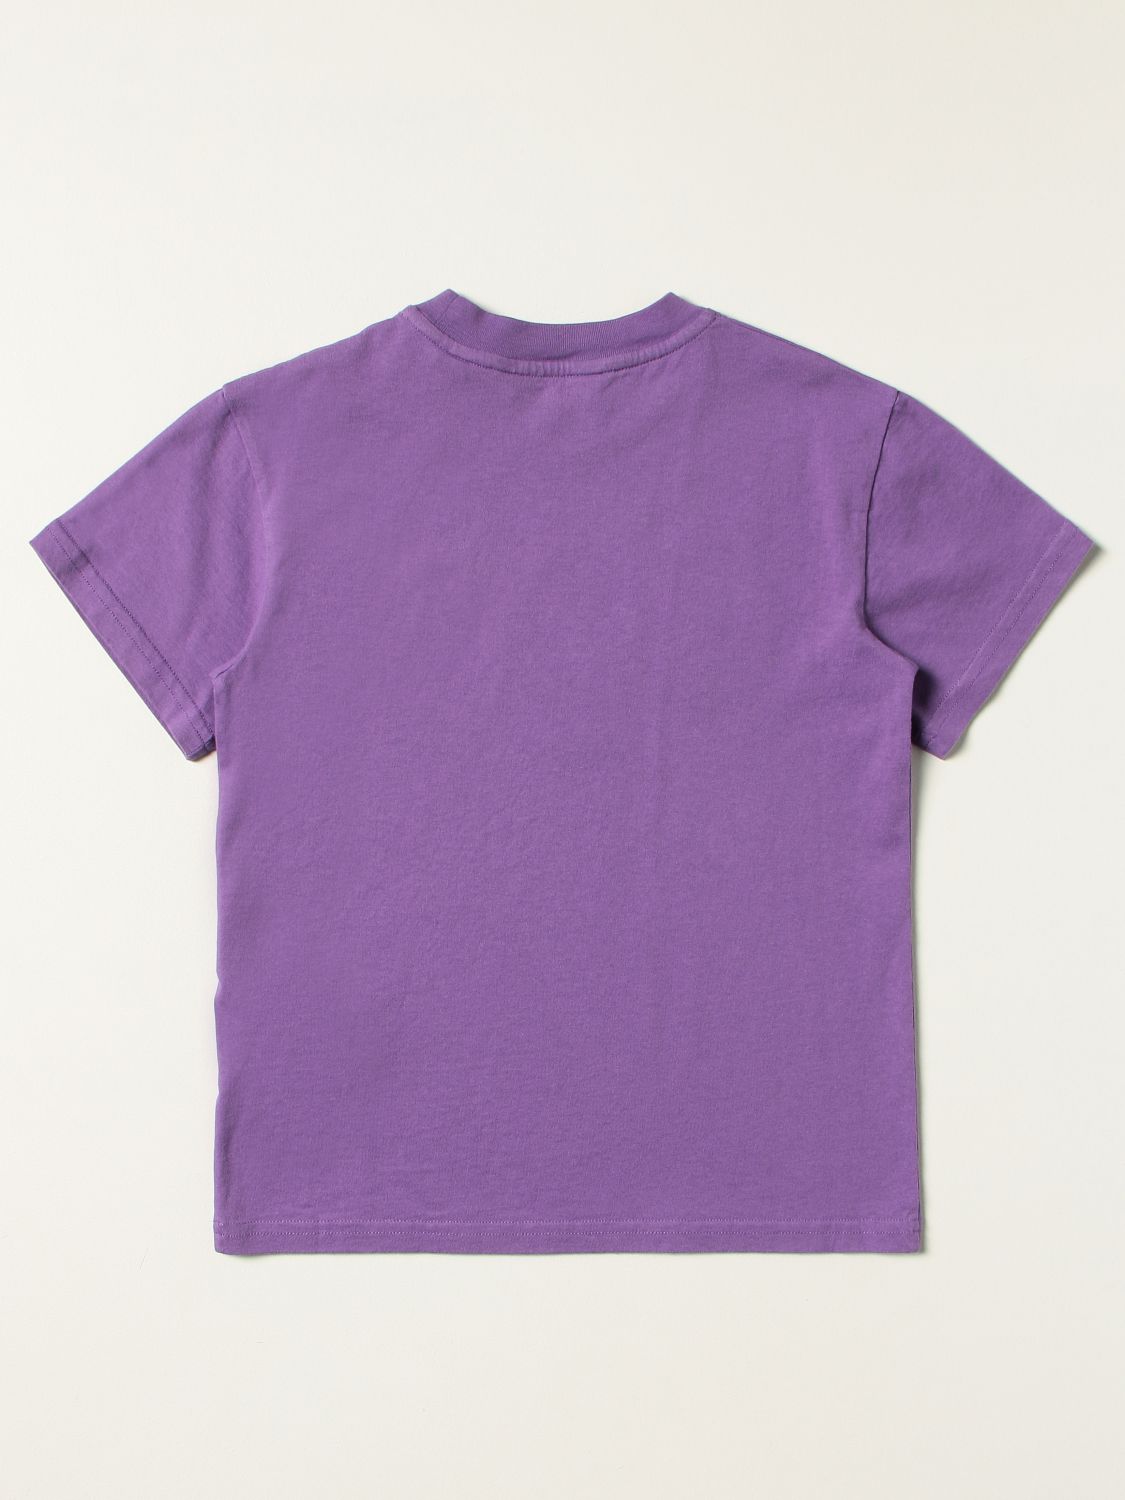 T恤 Palm Angels: T恤 儿童 Palm Angels 紫色 2